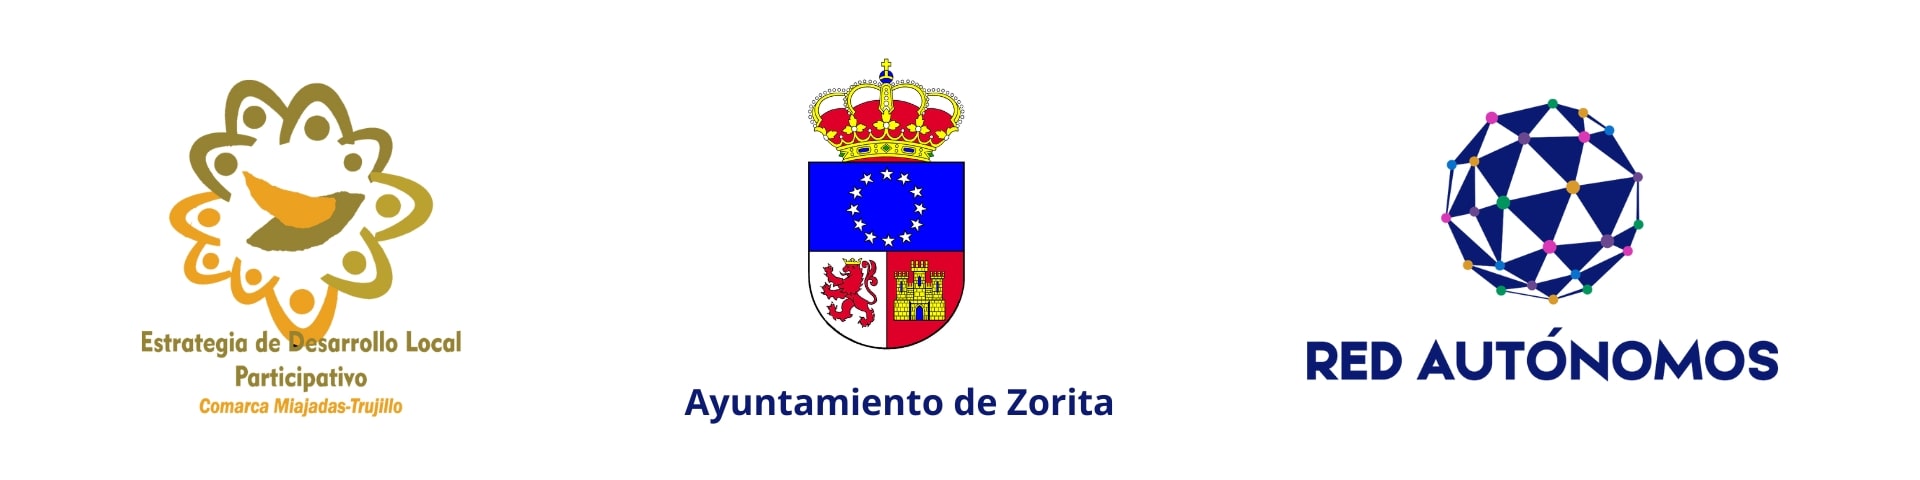 logos-ayuntamiento-zorita-adicomt-red-autonomos